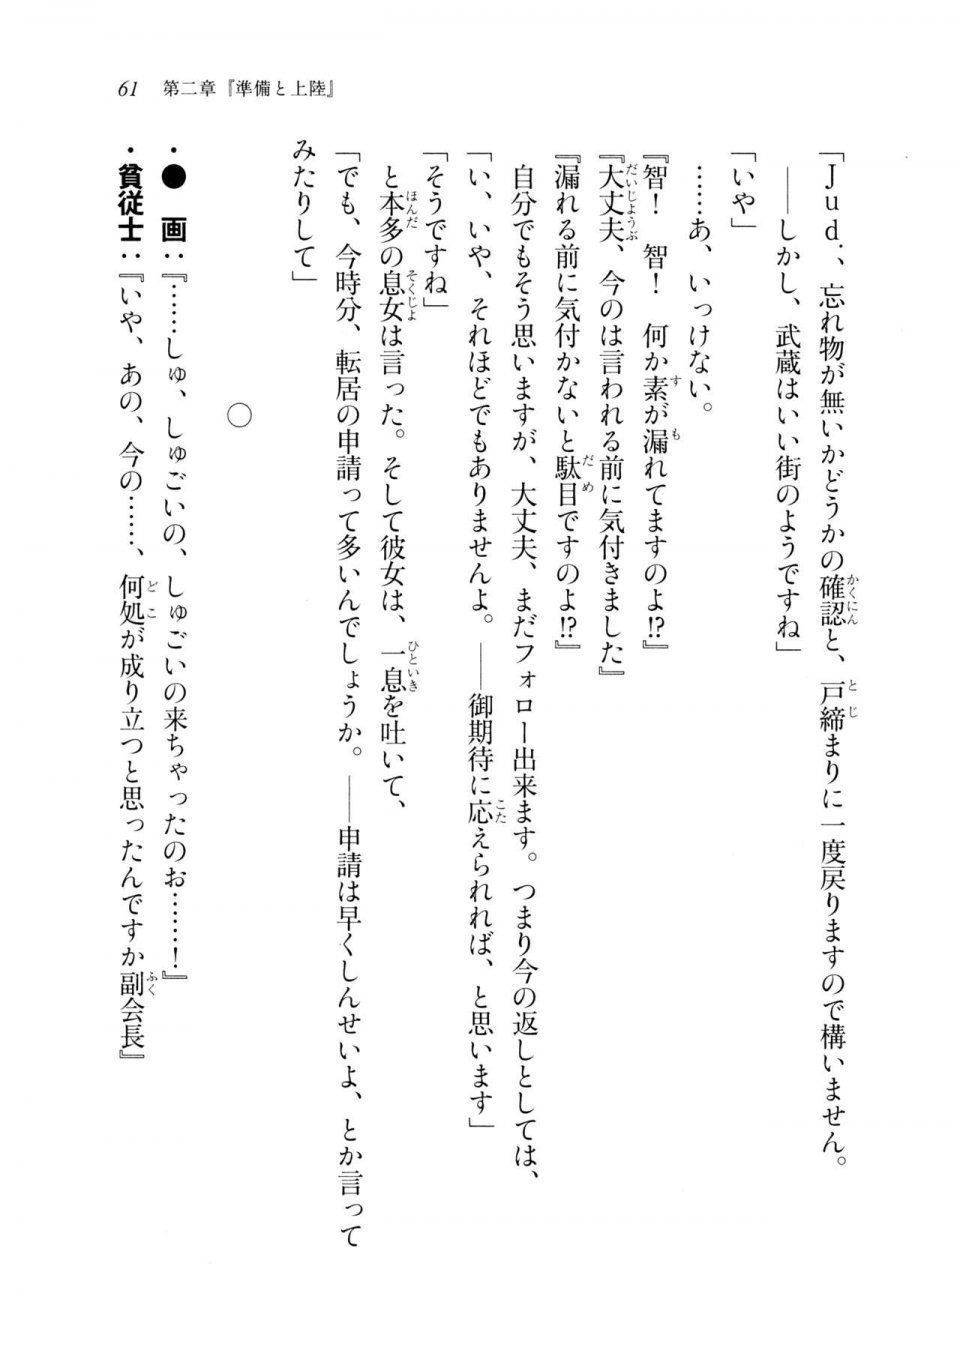 Kyoukai Senjou no Horizon LN Sidestory Vol 2 - Photo #59